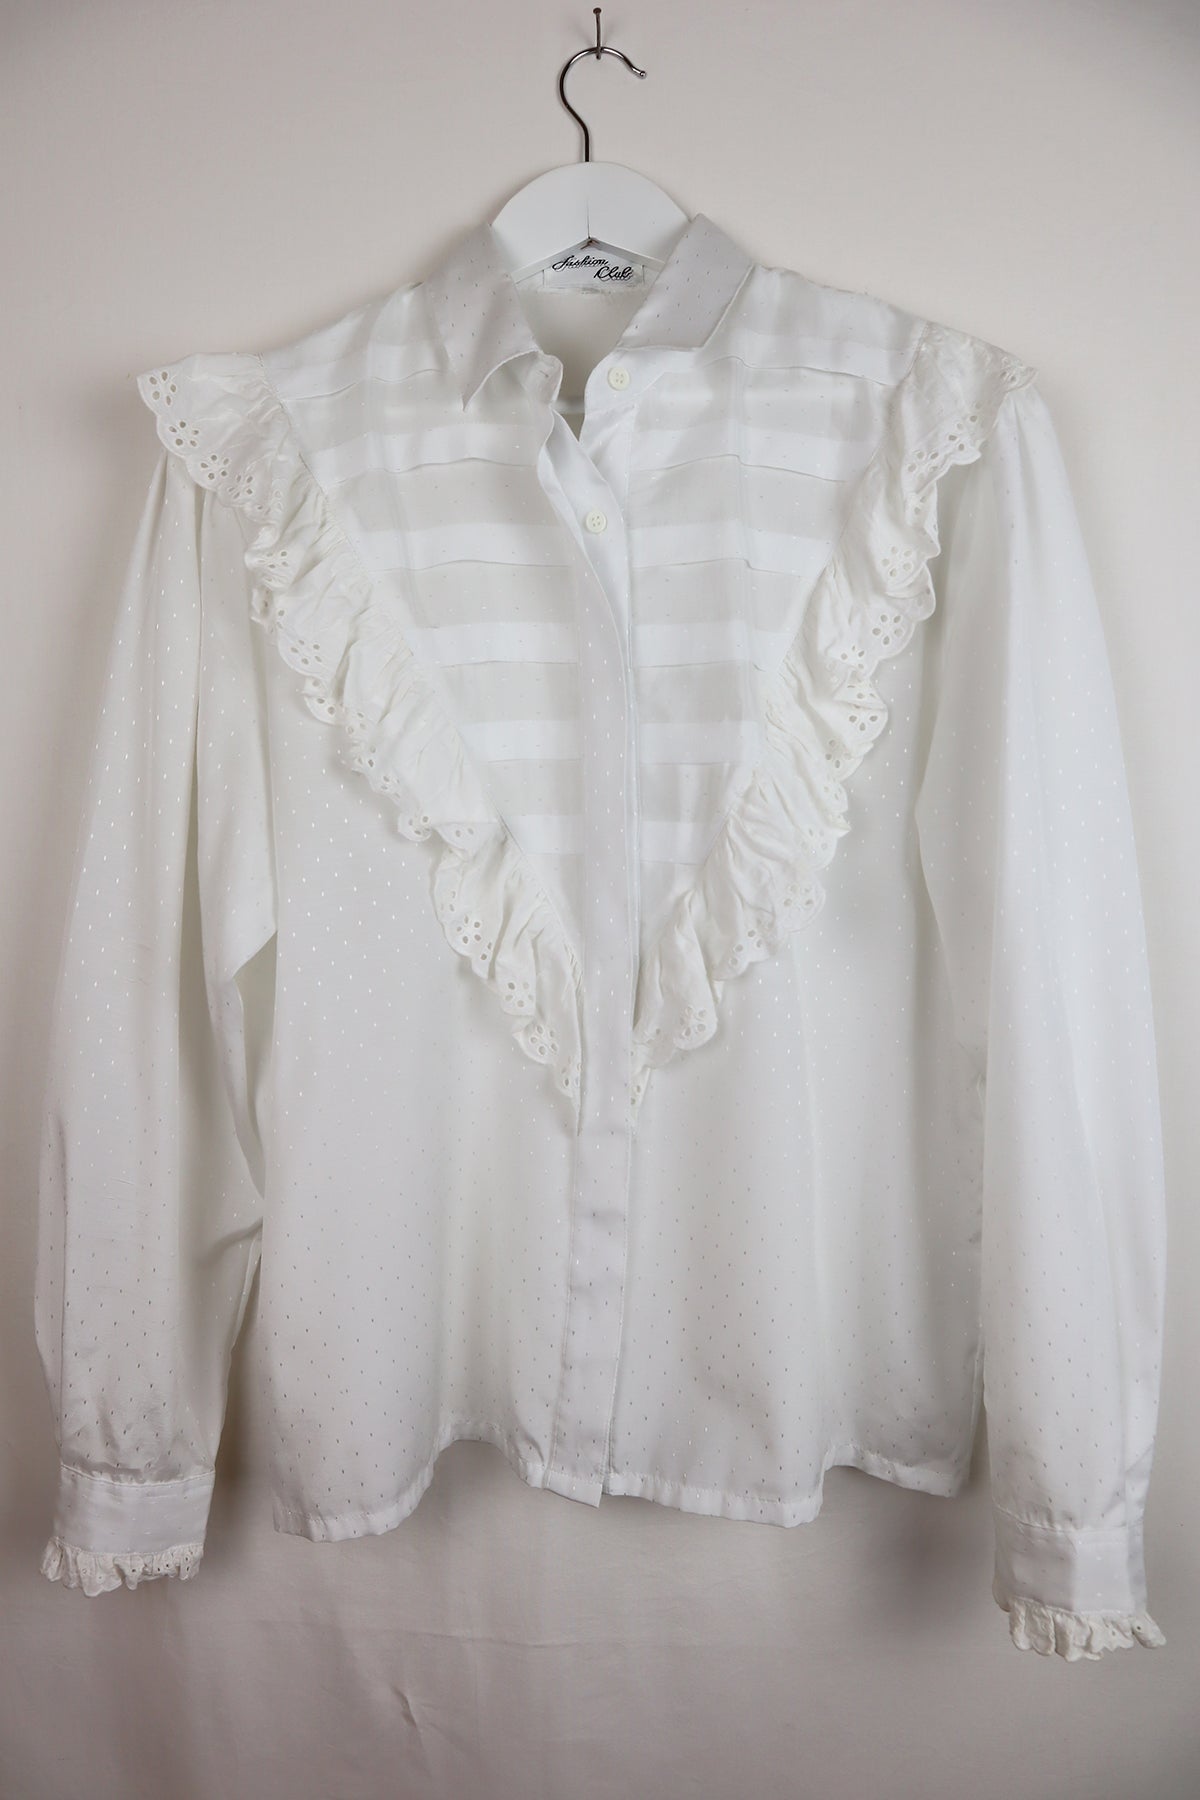 Bluse Vintage Weiß Rüschen ( Gr. M )